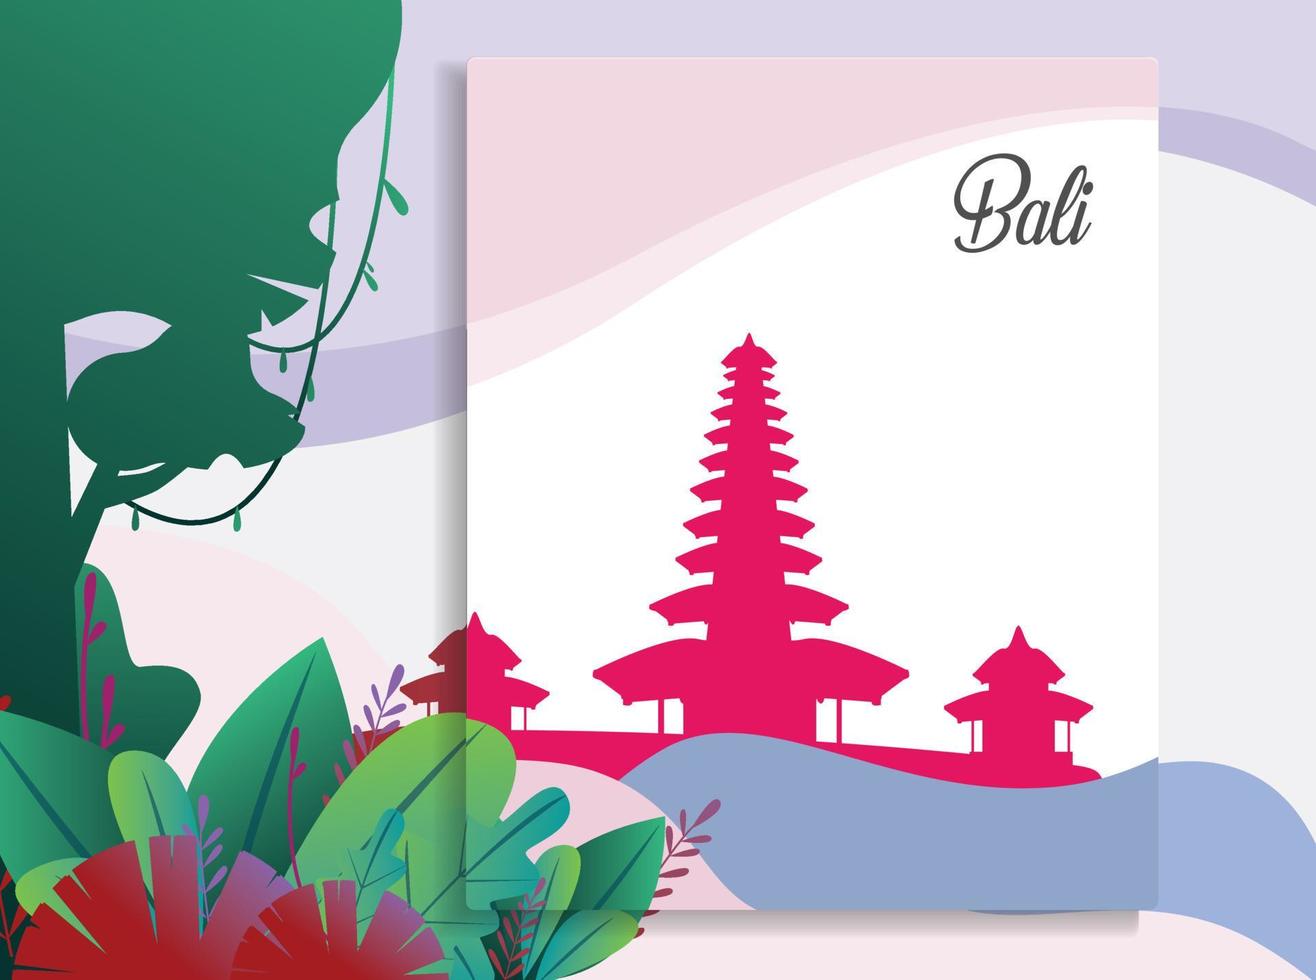 belle illustration vectorielle de l'île tropicale de bali avec la silhouette du temple vecteur